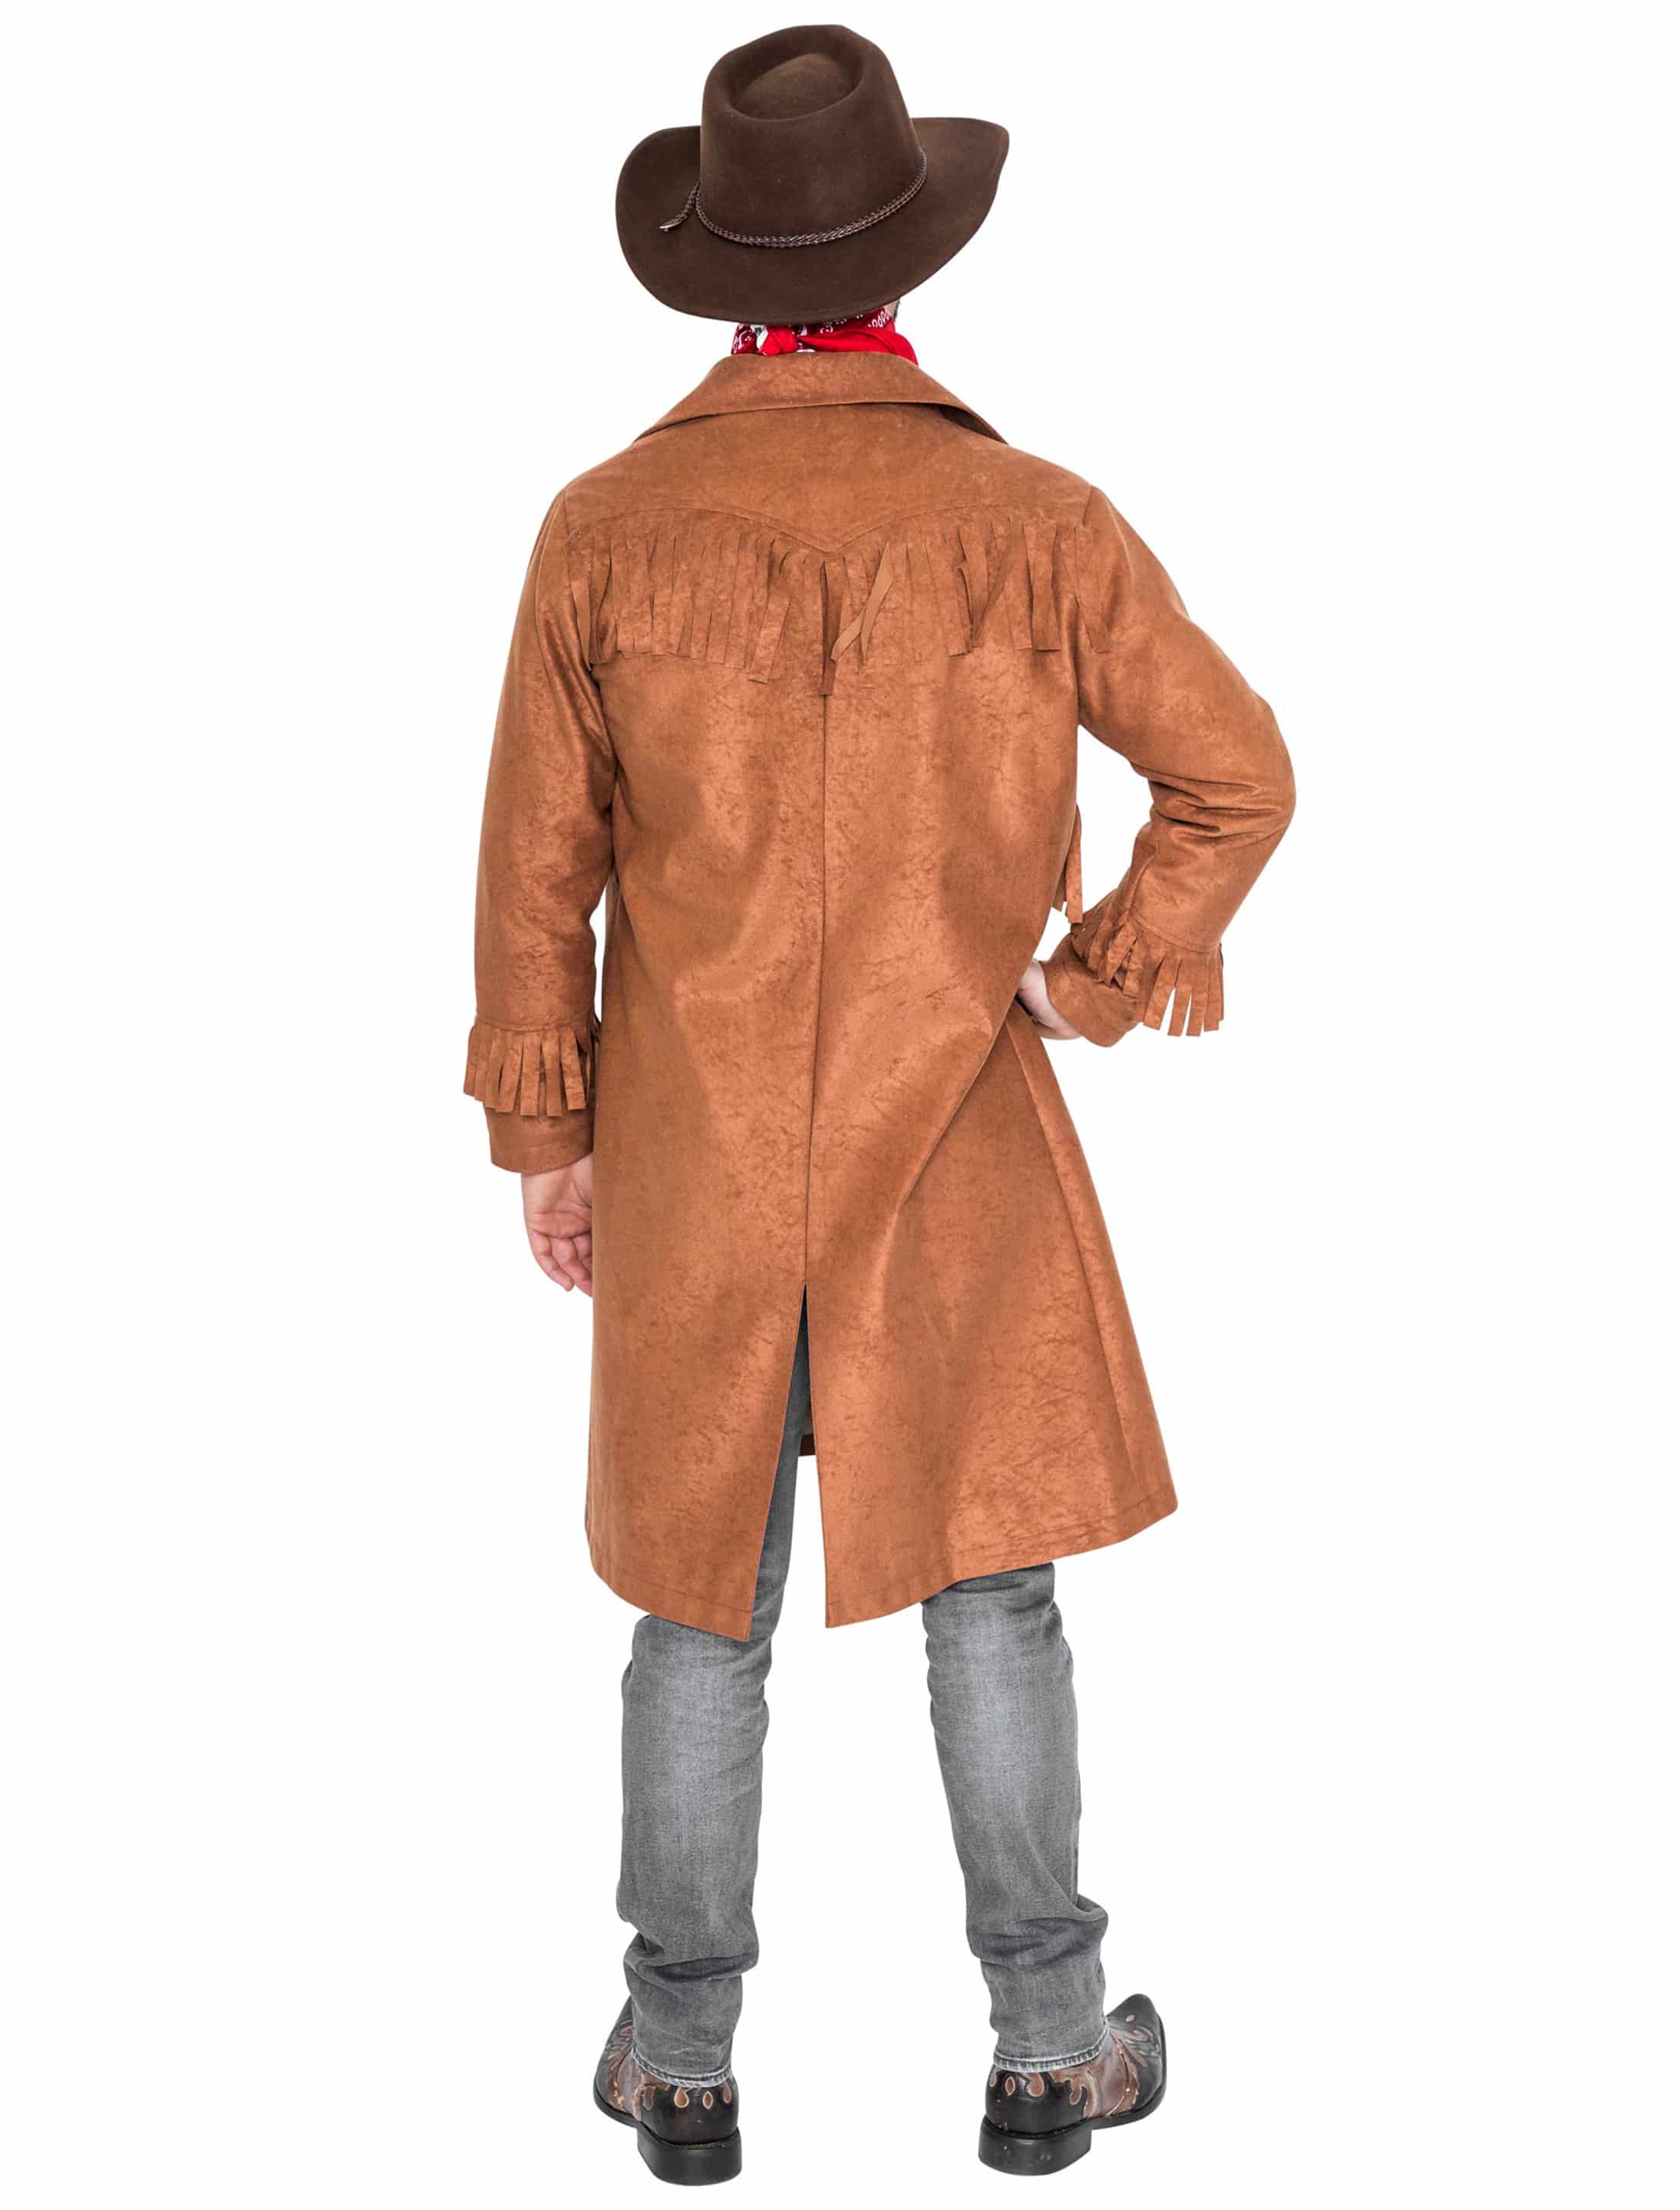 Mantel Cowboy mit Fransen braun S/M